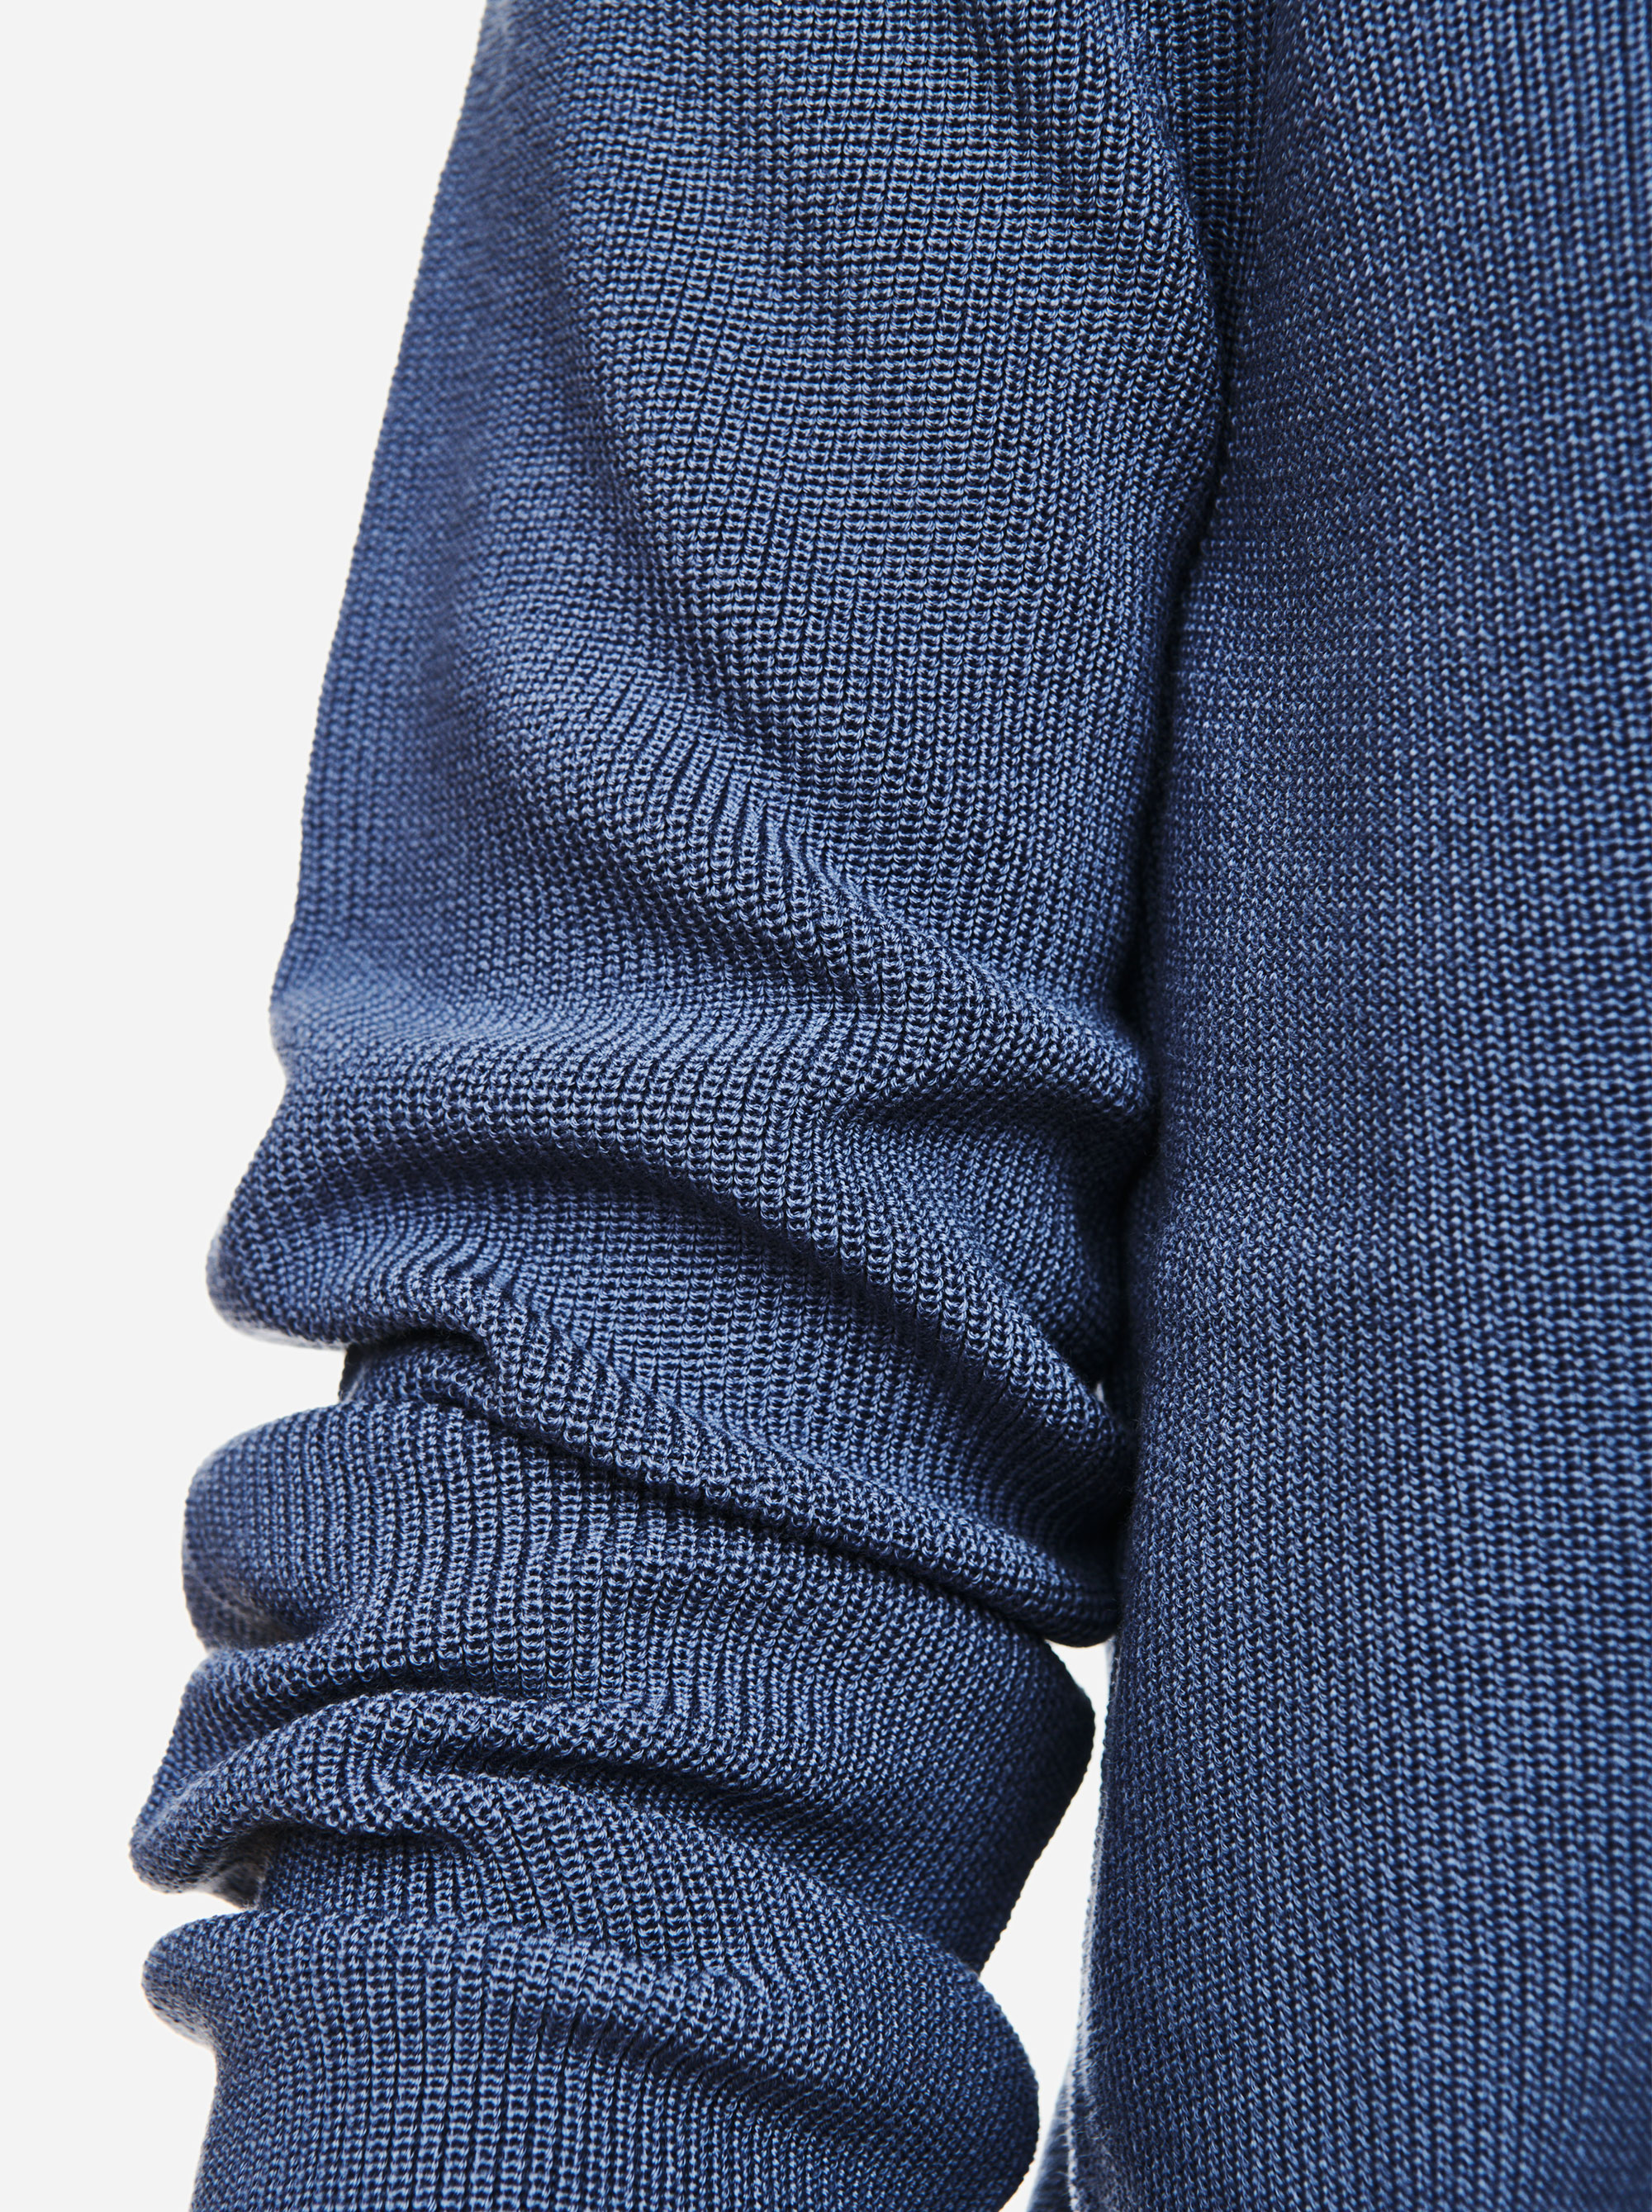 Teym - V-Neck - The Merino Sweater - Men - Sky blue - 2